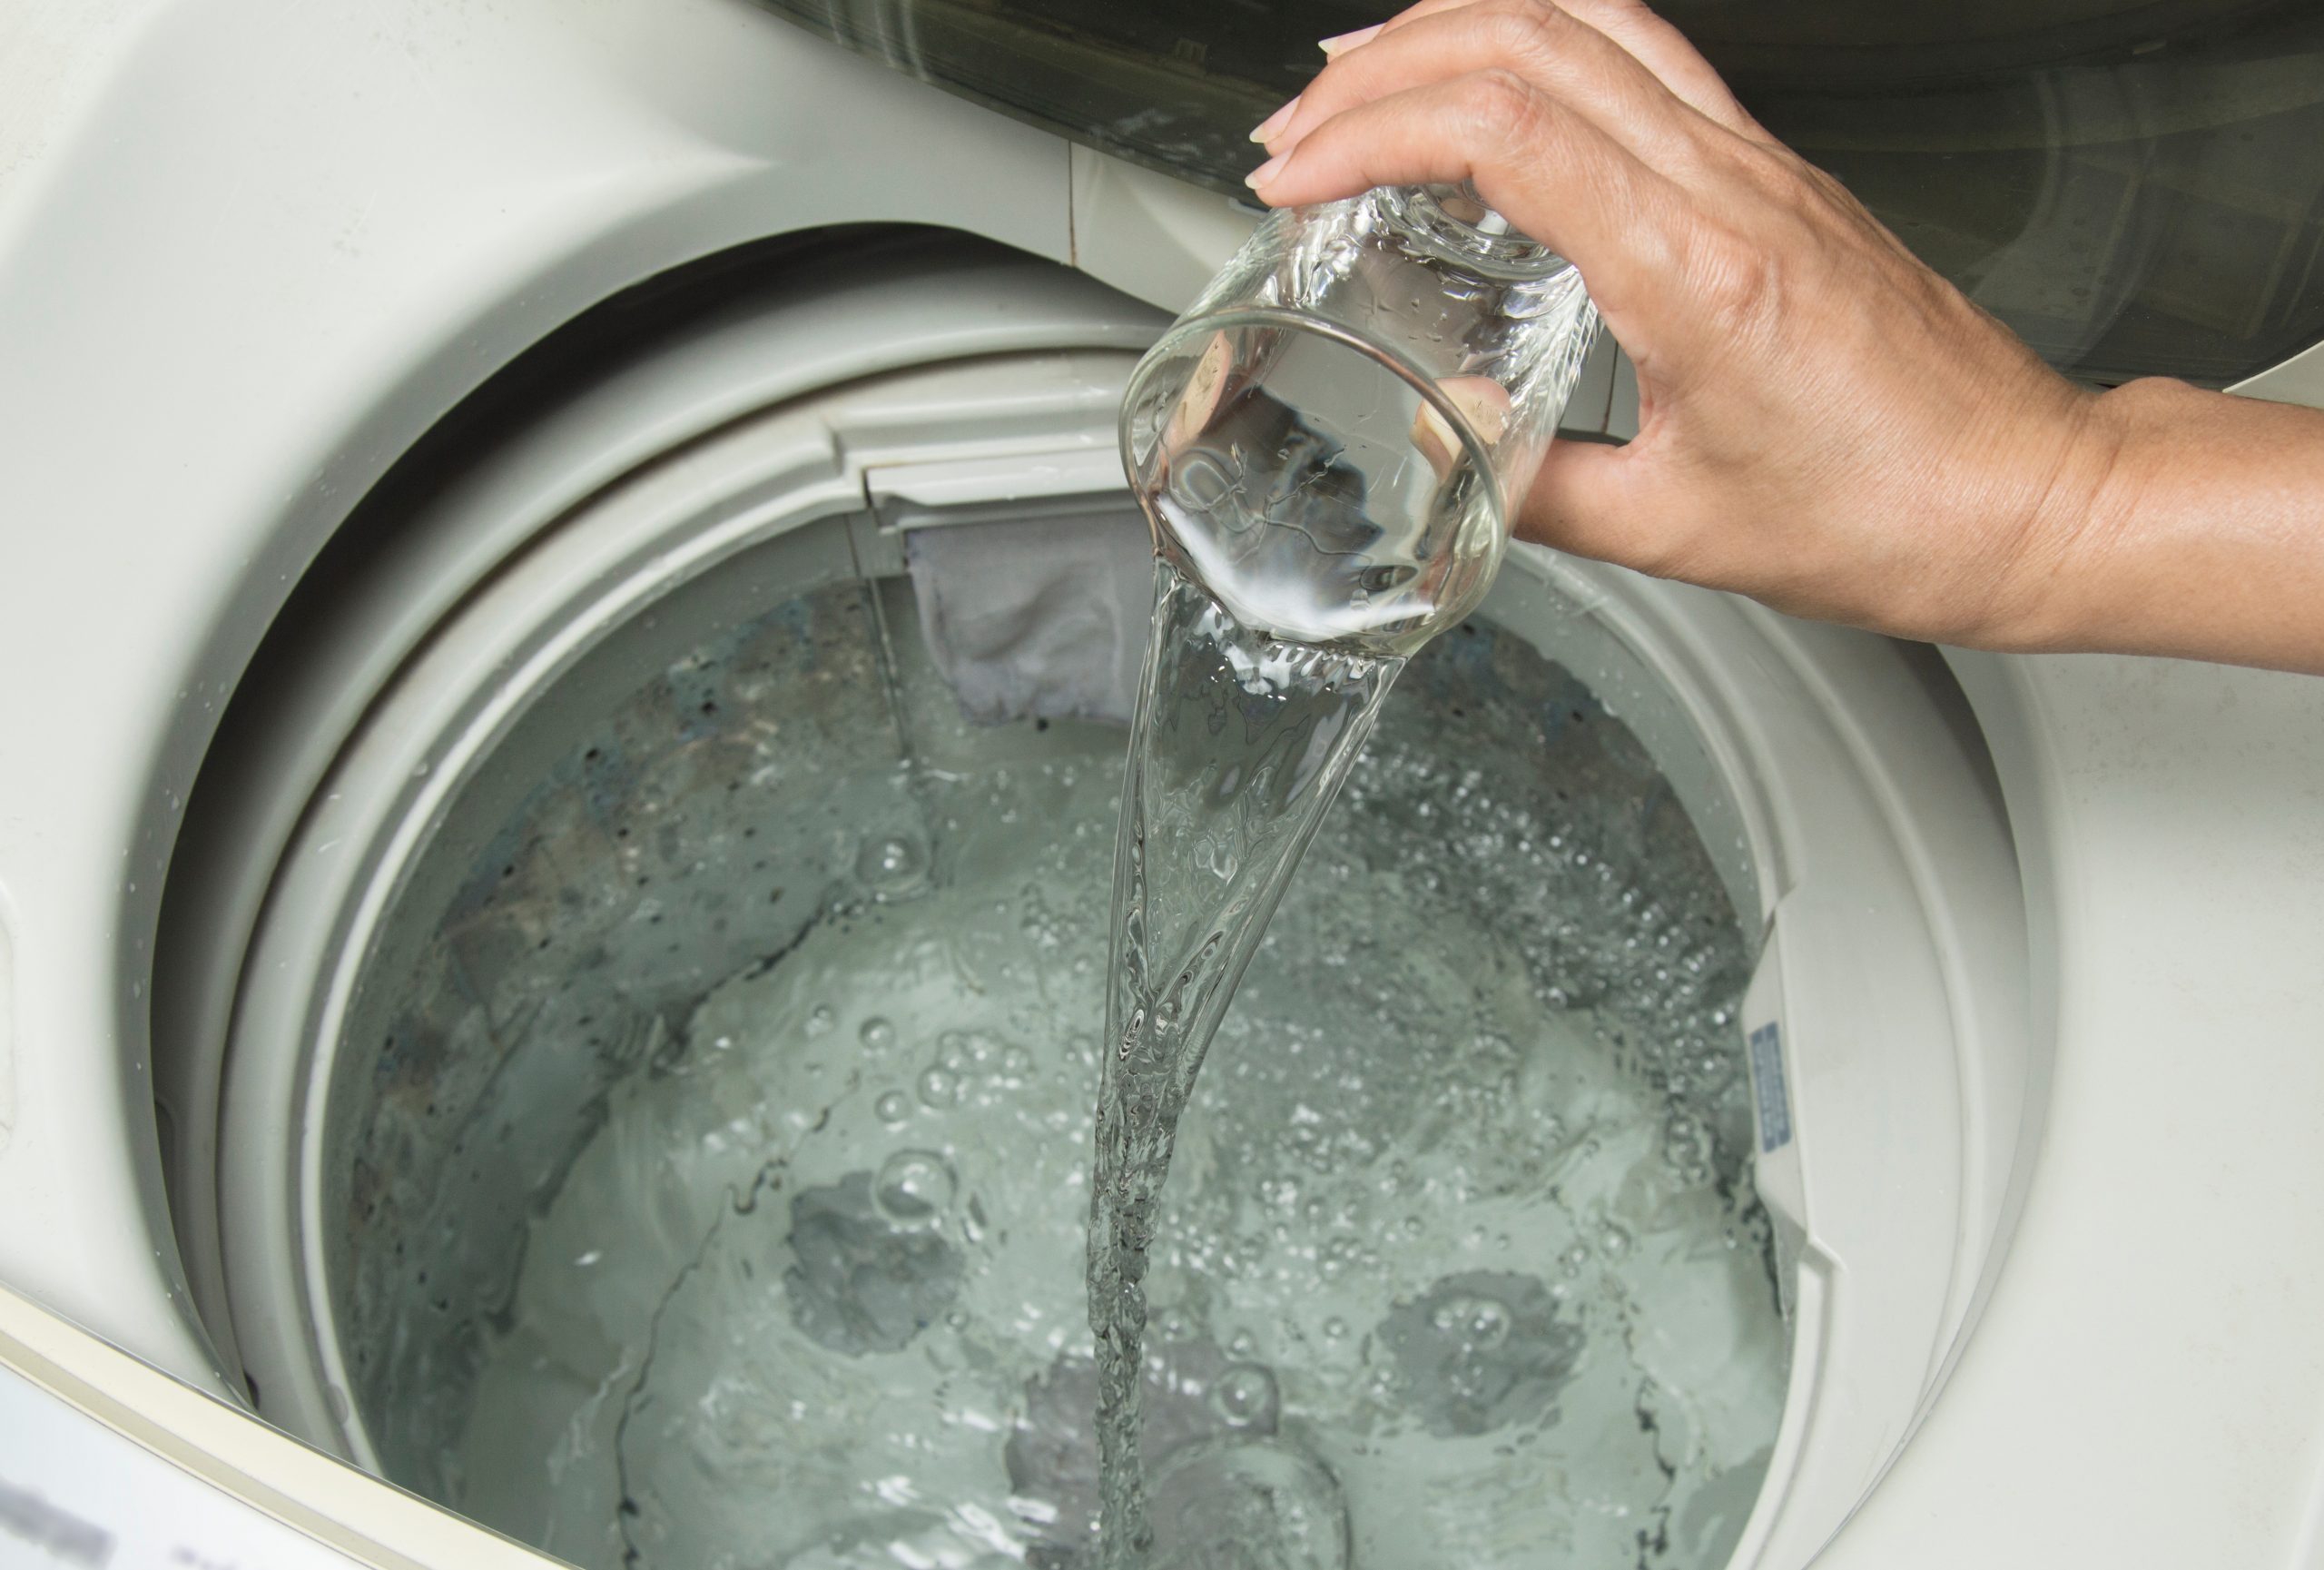 Na imagem, é possível visualizar uma maquina de lavar com sua tampa levantada e dentro dela é possível ver água até o nível médio. Também é possivel ver uma pessoa adicionando com o auxilio de um copo um liquido dento da máquina